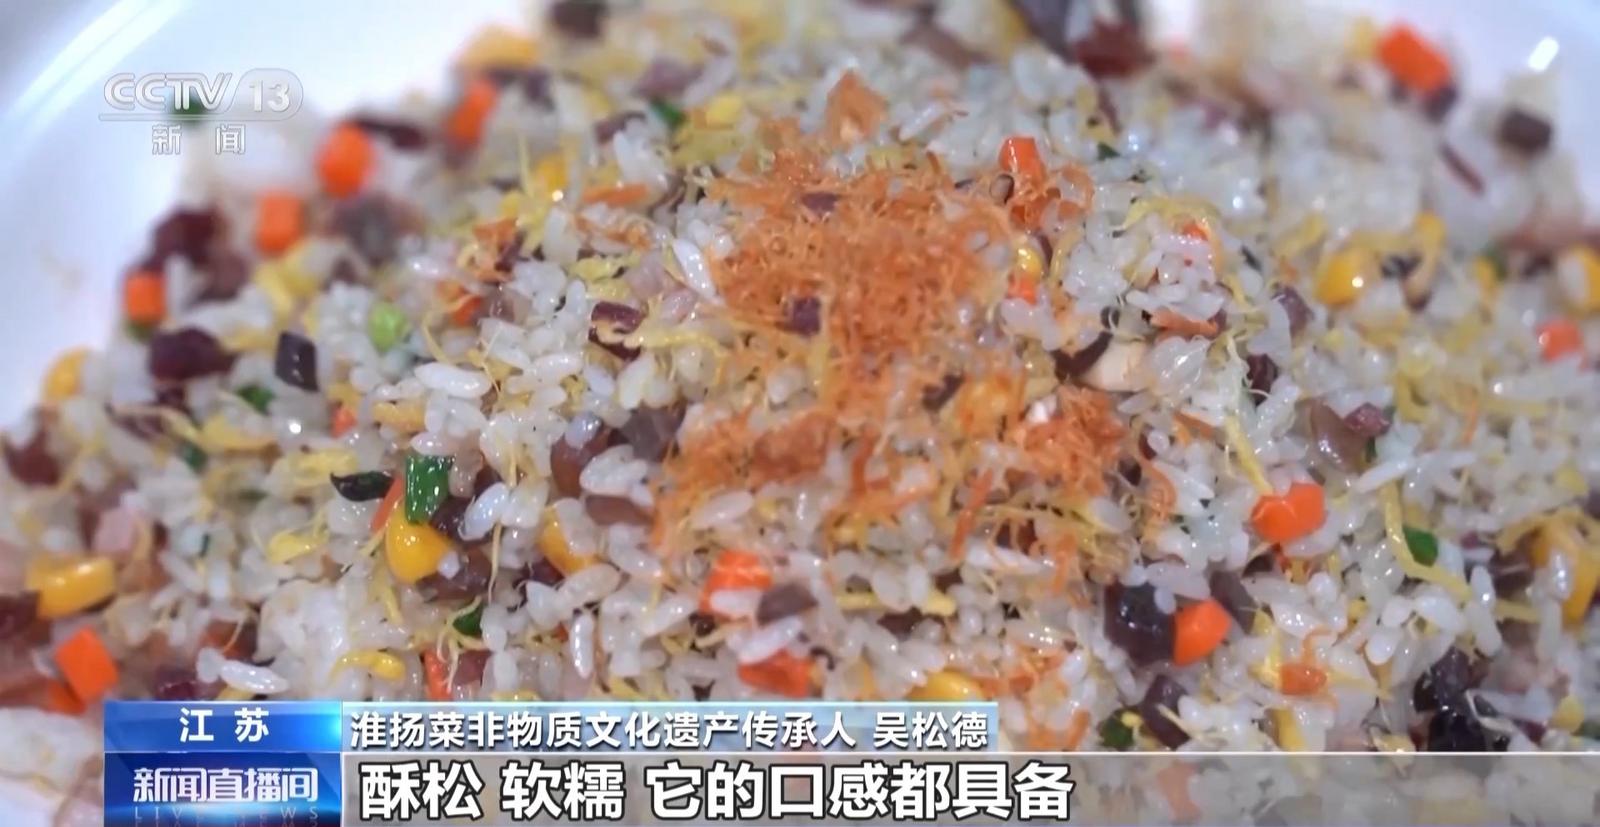 从一碗米饭看粮食品质升级